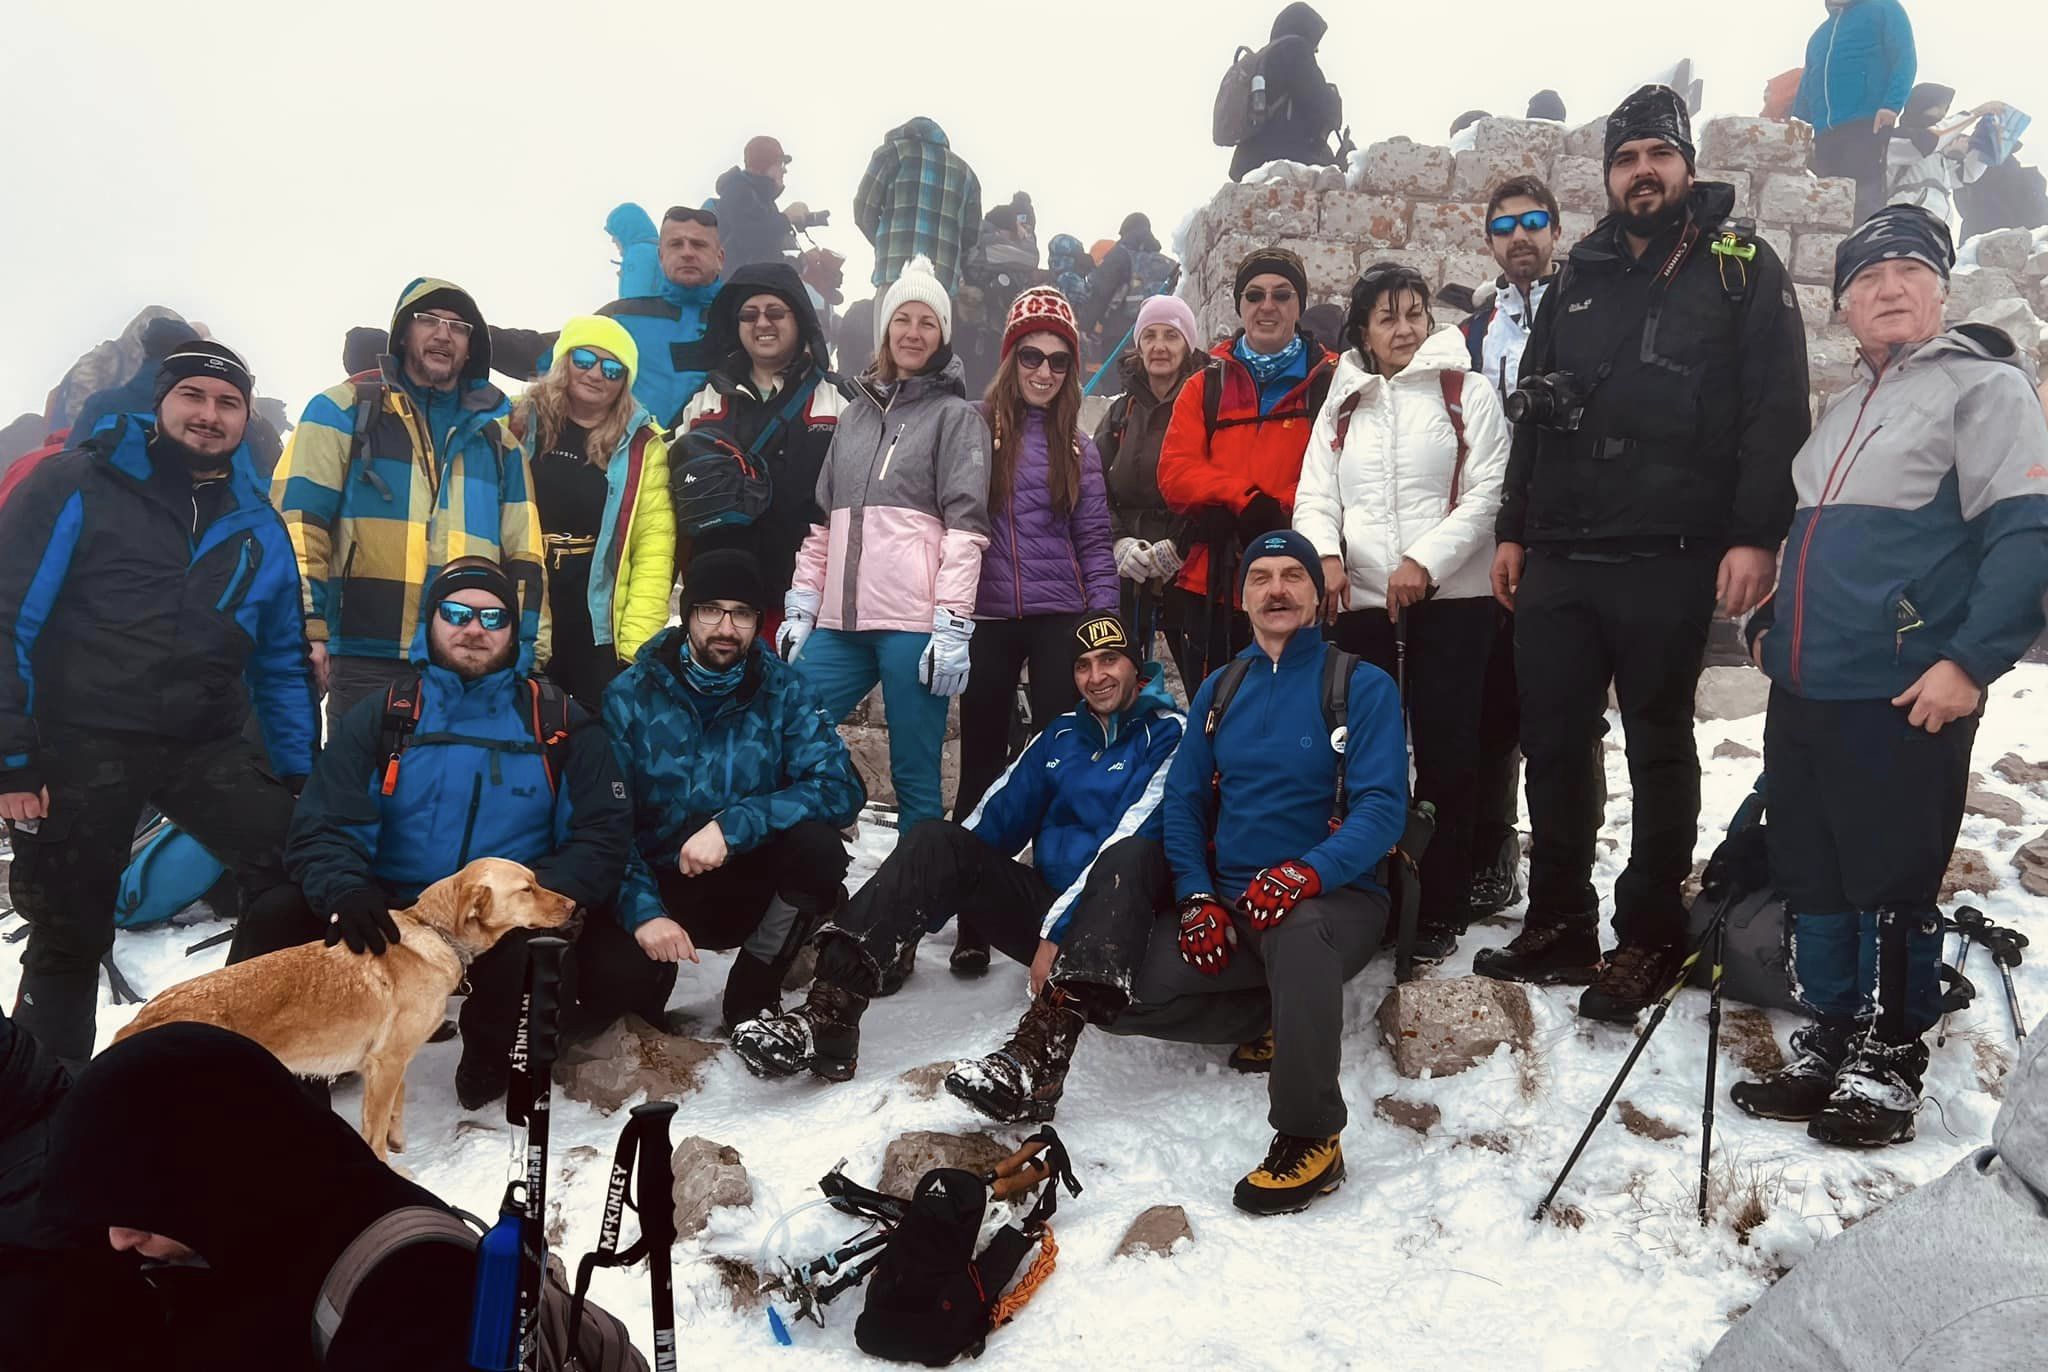 Još jedna uspešna akcija planinara na Rtnju, na Božičnom usponu i dvadesetak članova PK Javorak